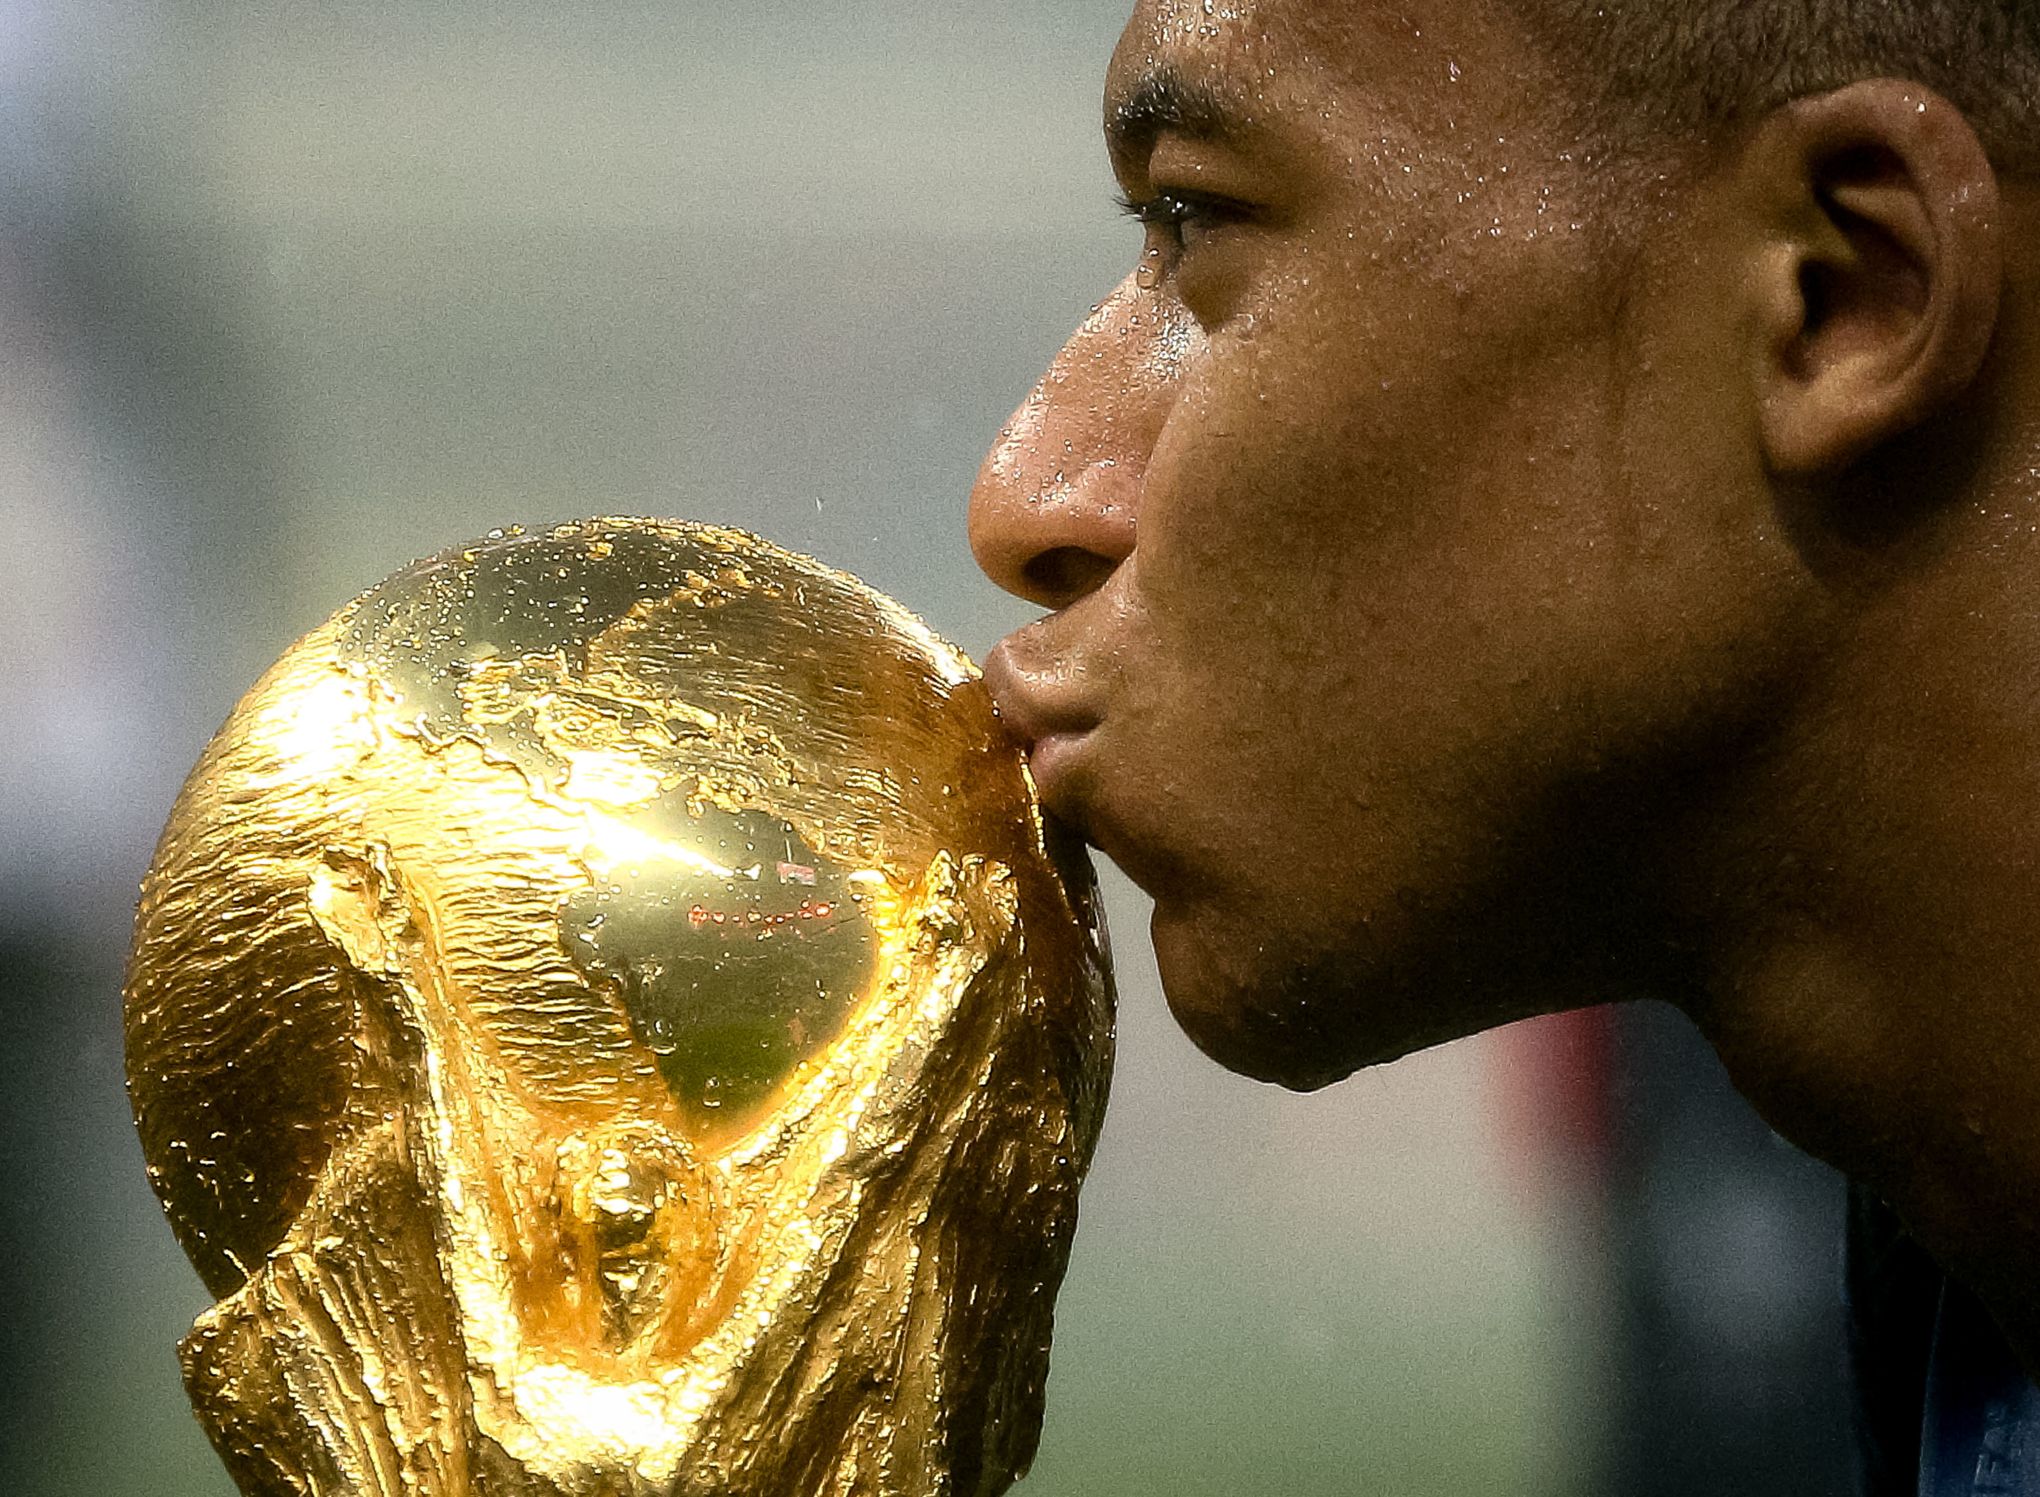 Ce que vous ne savez pas sur le trophée de la Coupe du monde